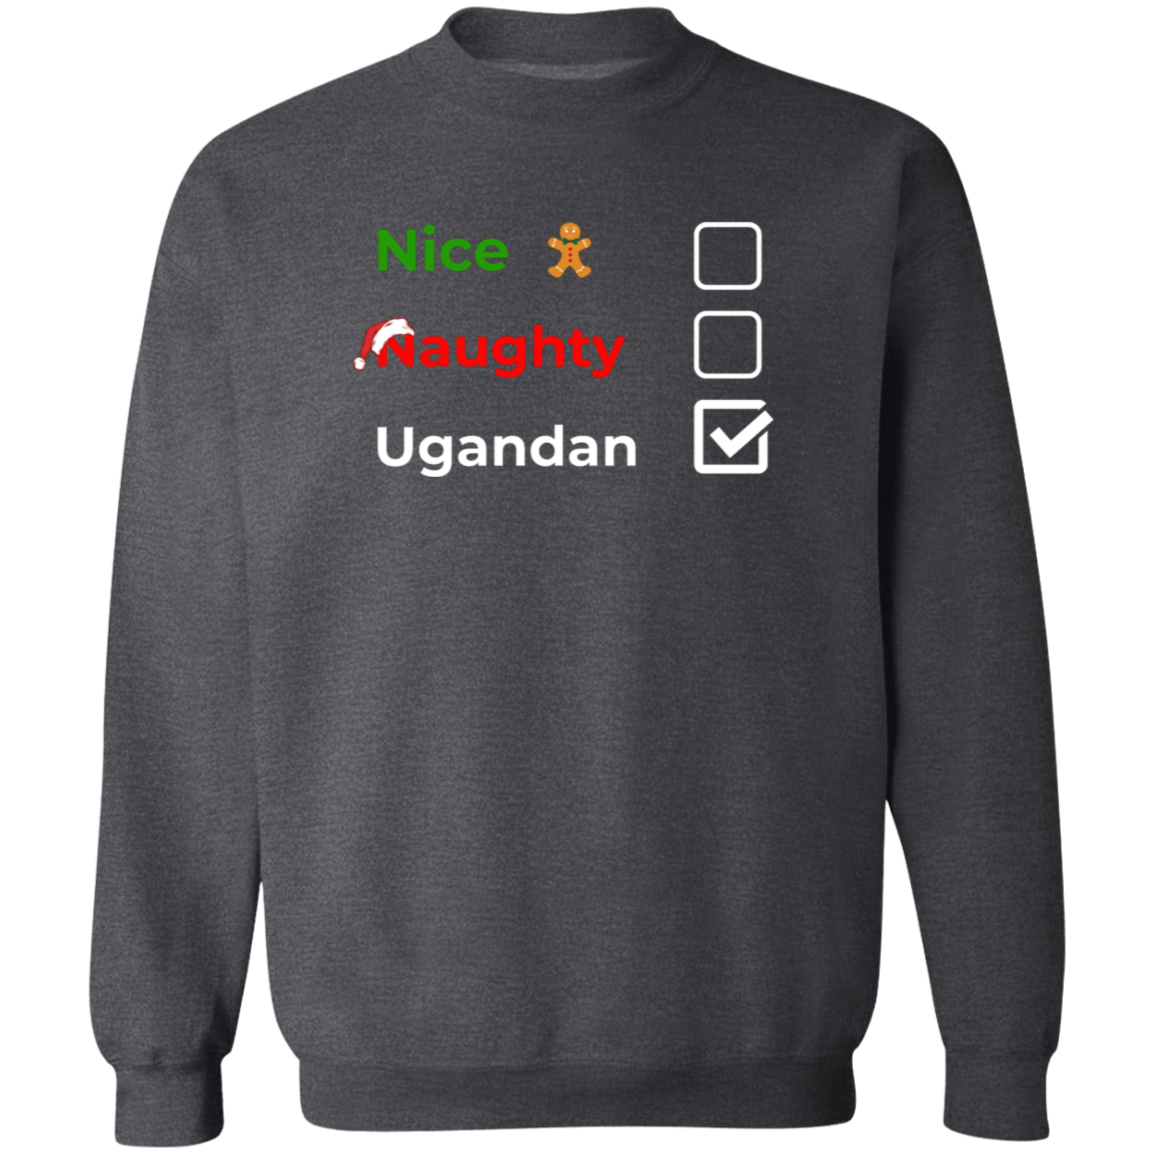 Christmas Sweatshirt | Nice, Naughty, Ugandan